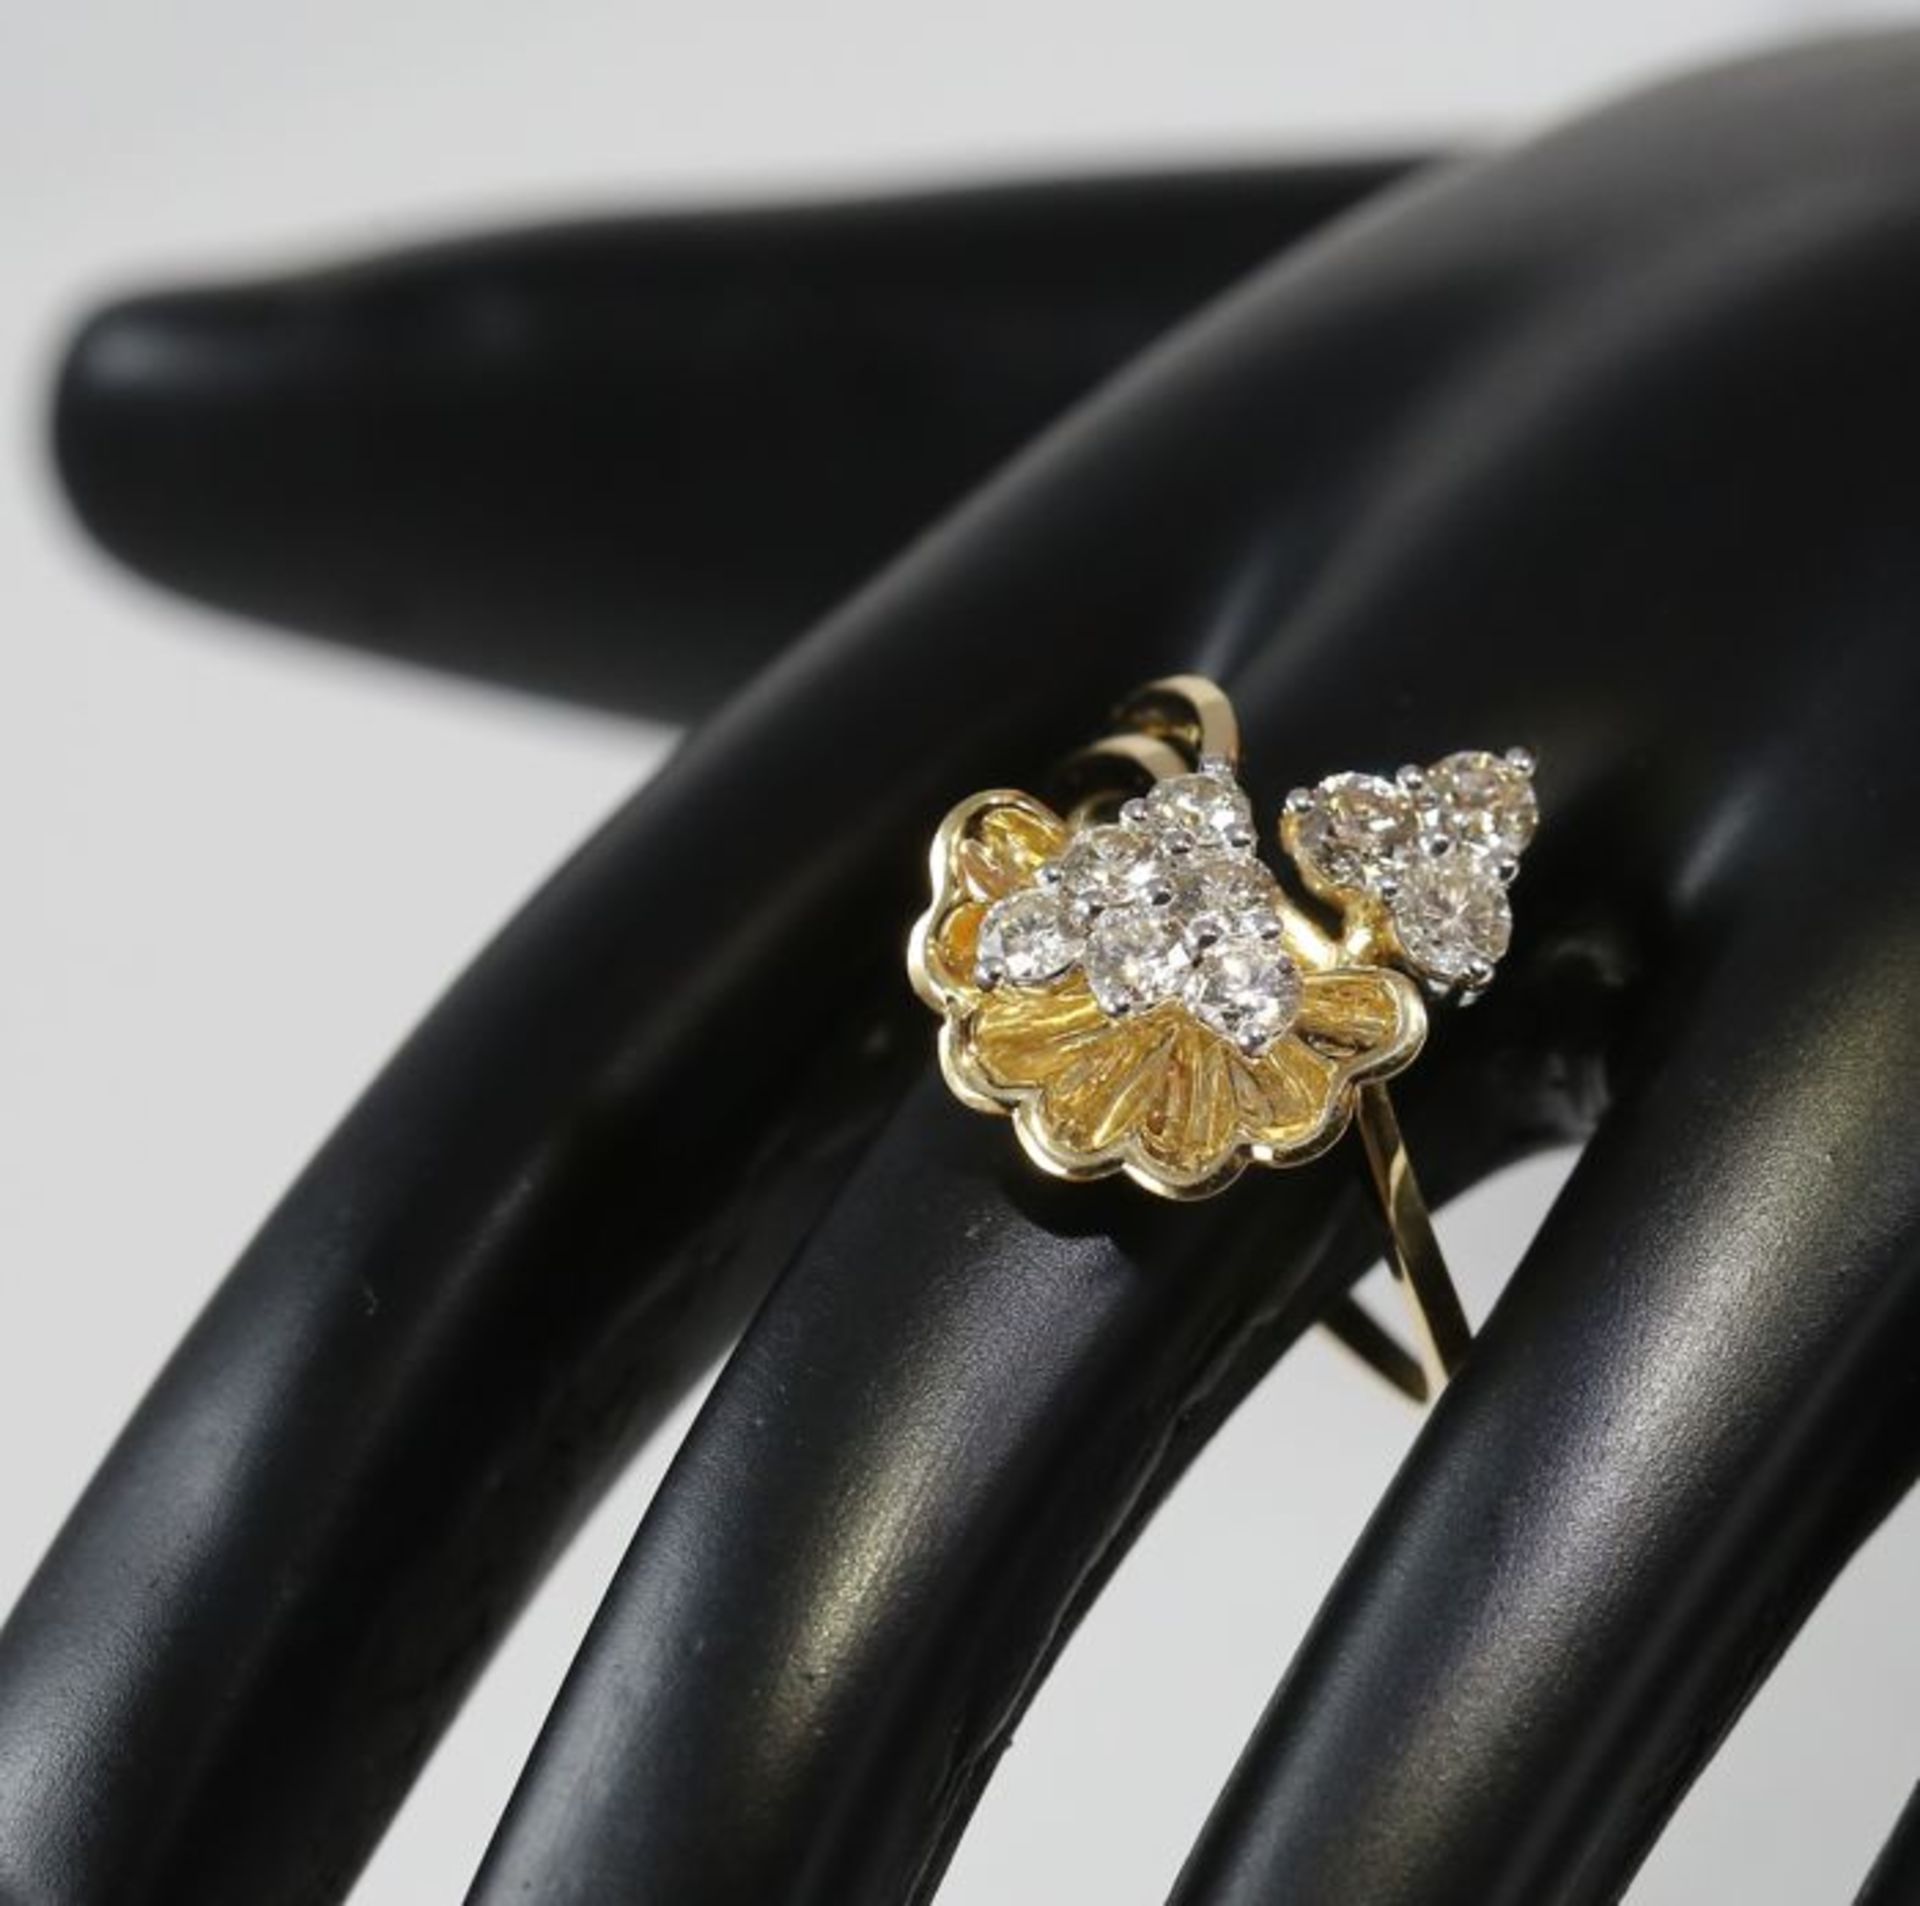 IGI certified 18 K / 750 Yellow gold Designer Diamond Ring - Image 7 of 9